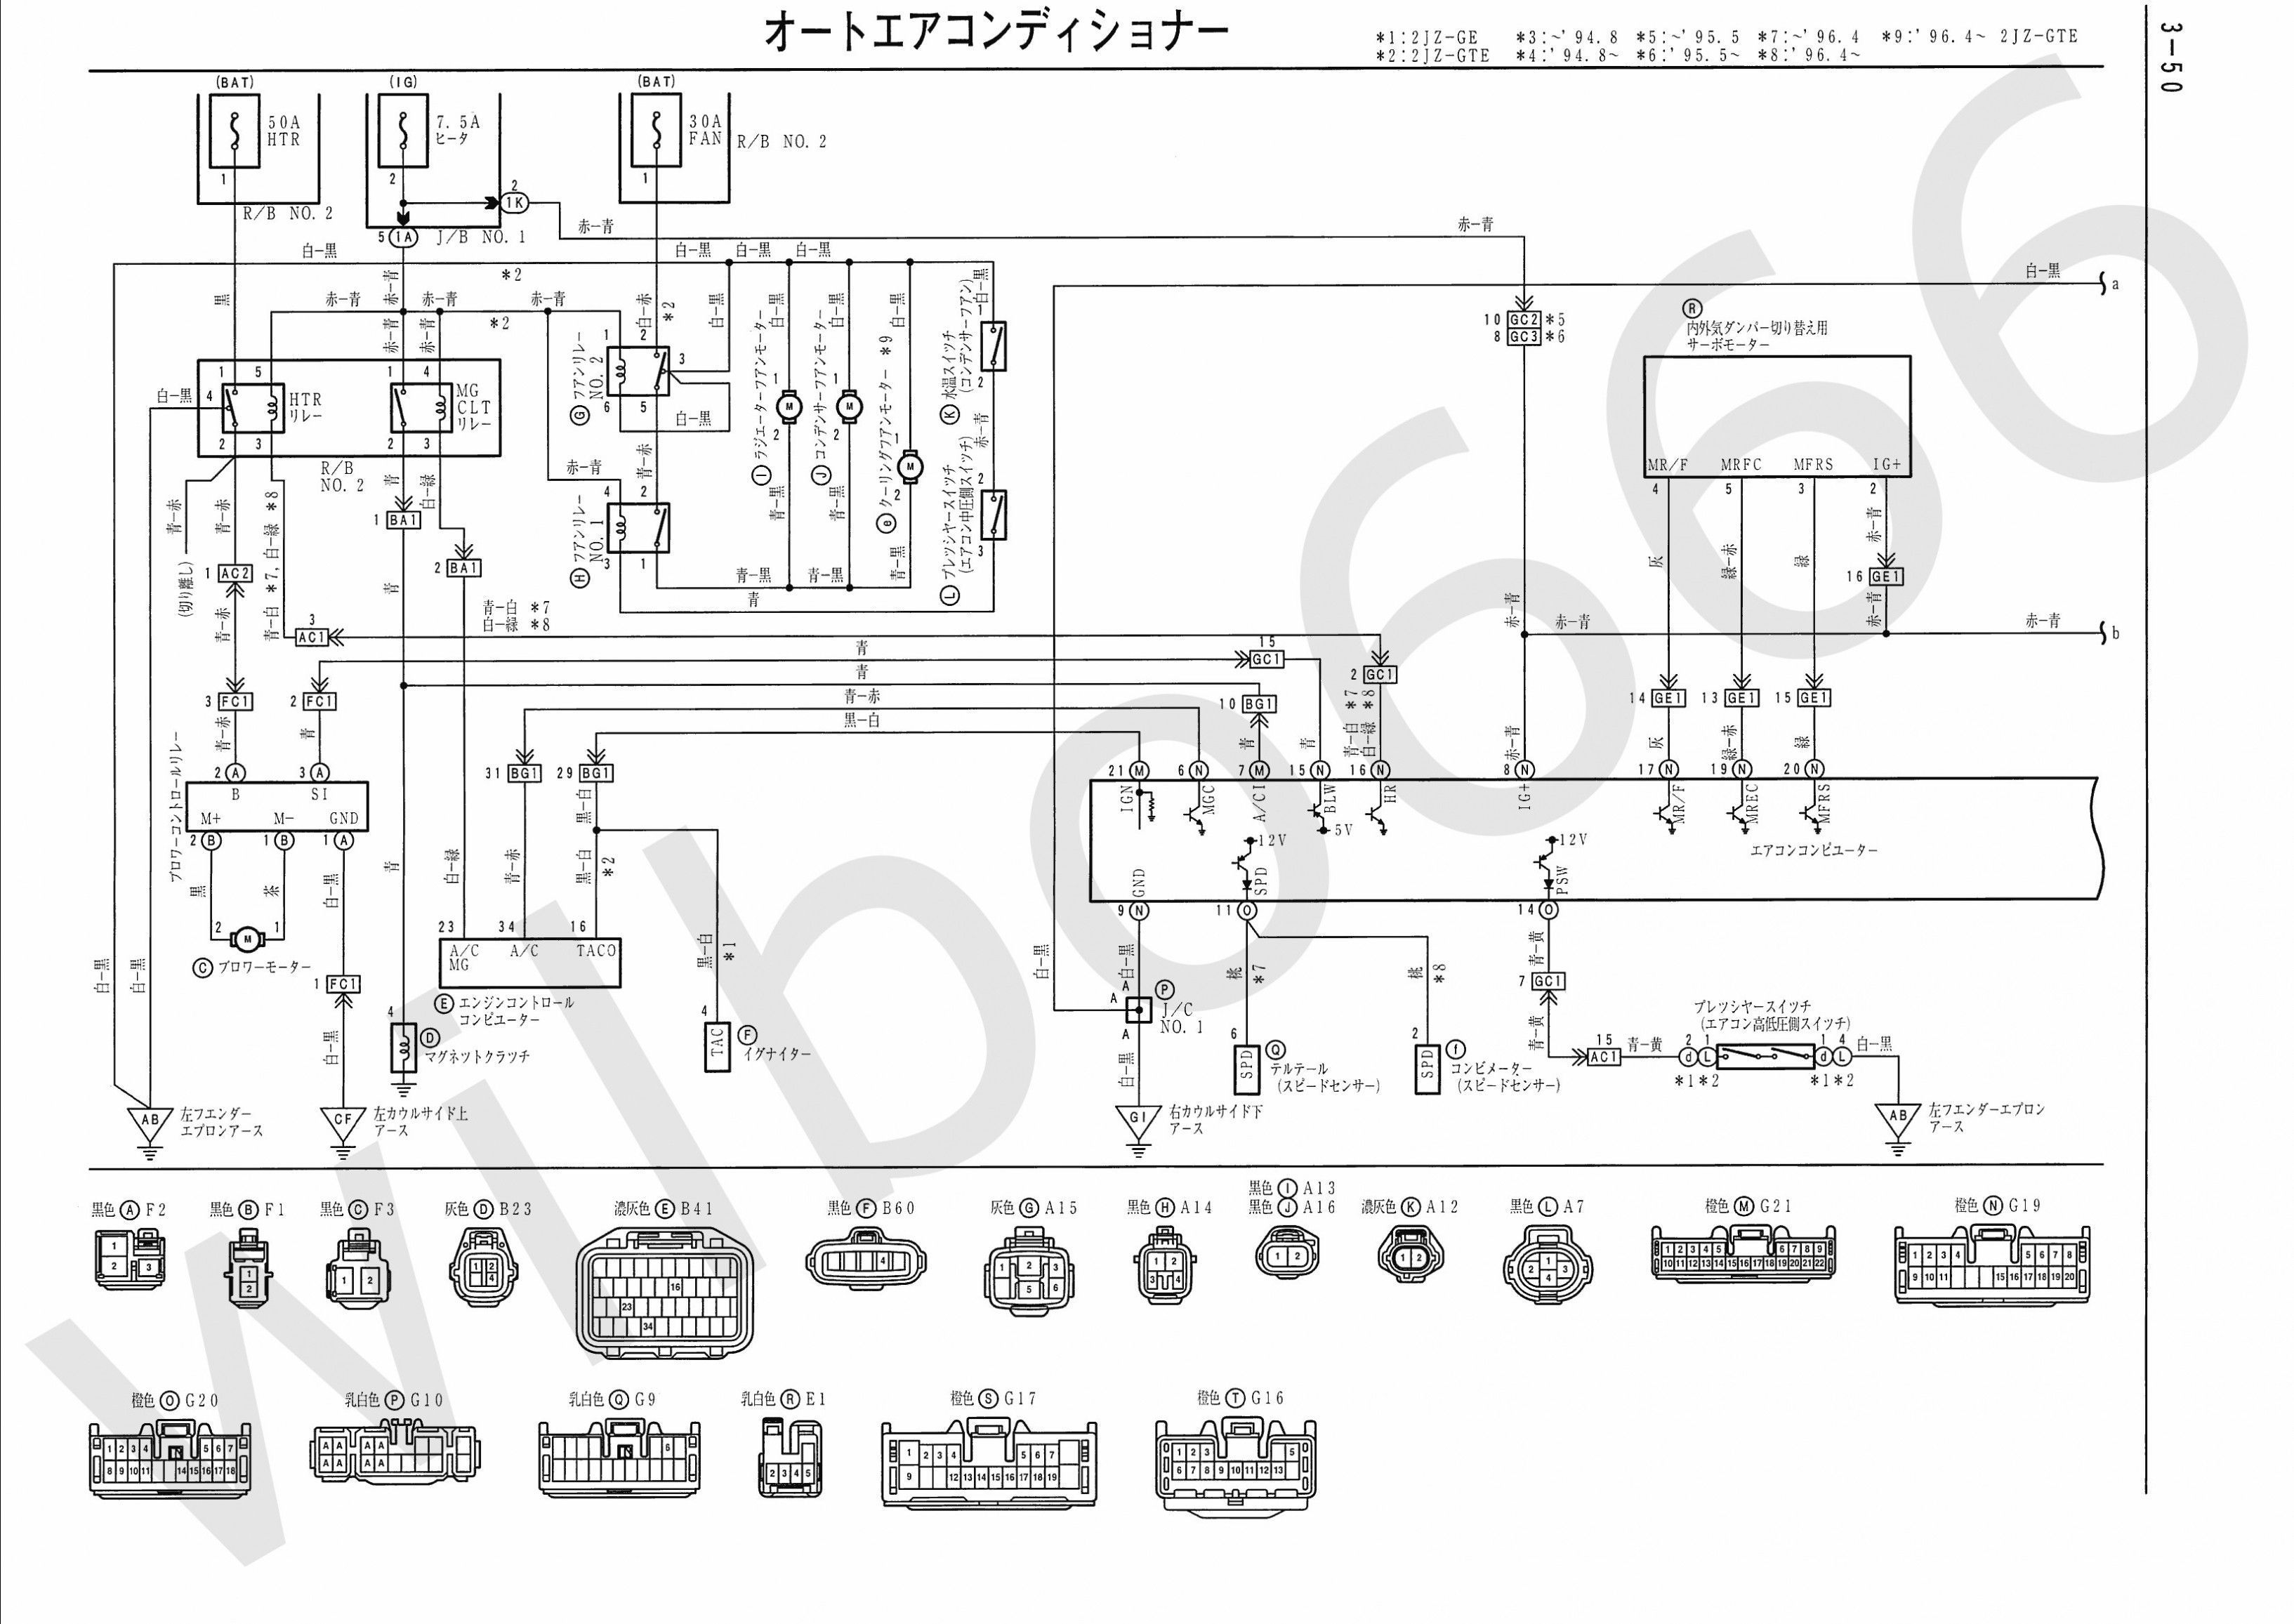 2009 Honda Civic Engine Diagram 1998 Civic Engine Diagram Layout Wiring Diagrams • Of 2009 Honda Civic Engine Diagram